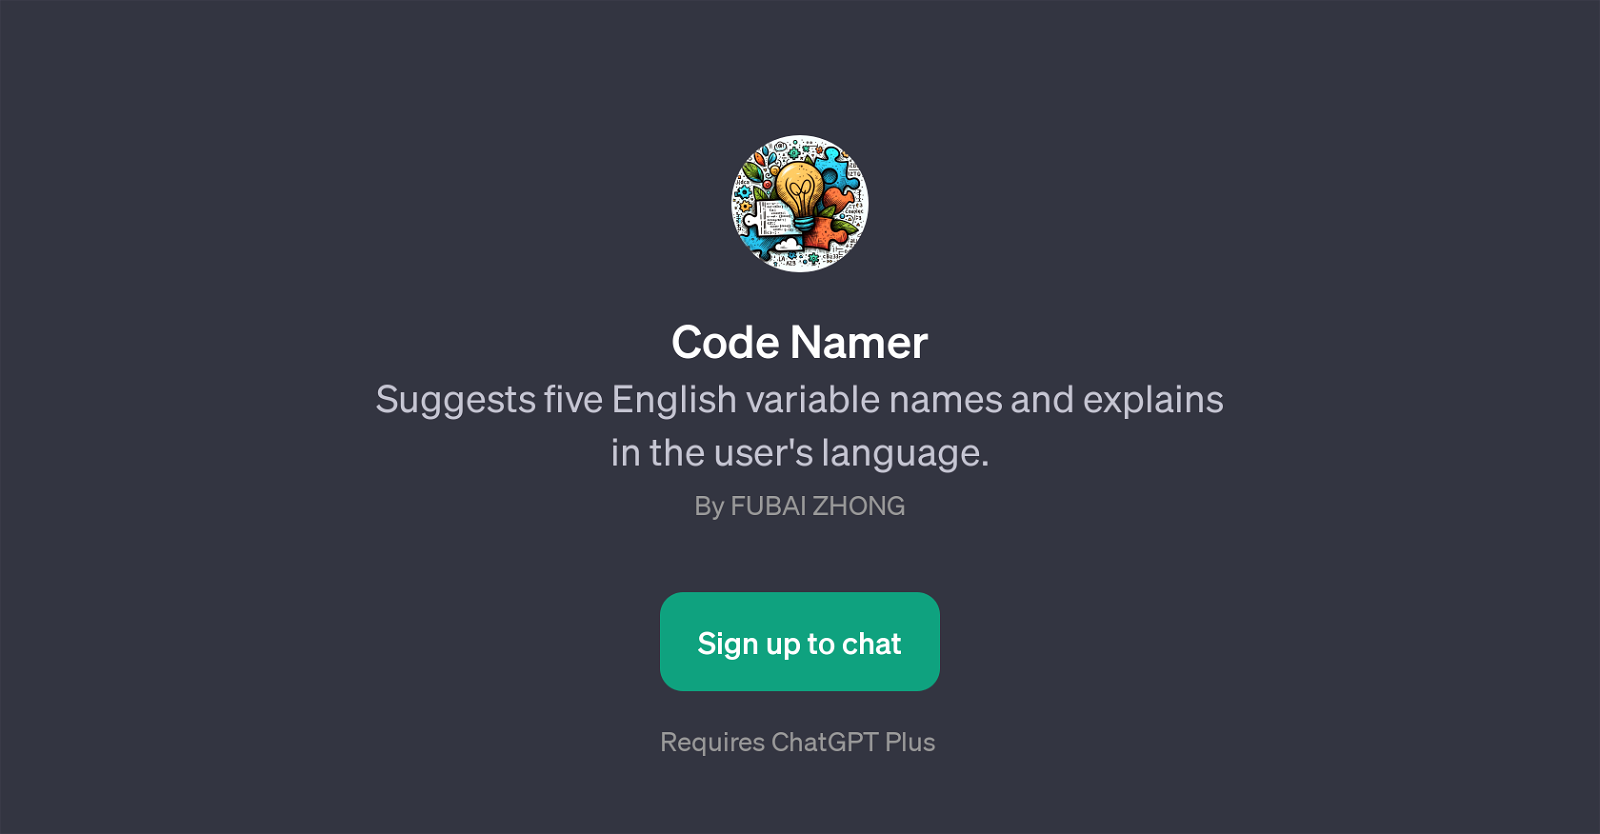 Code Namer website